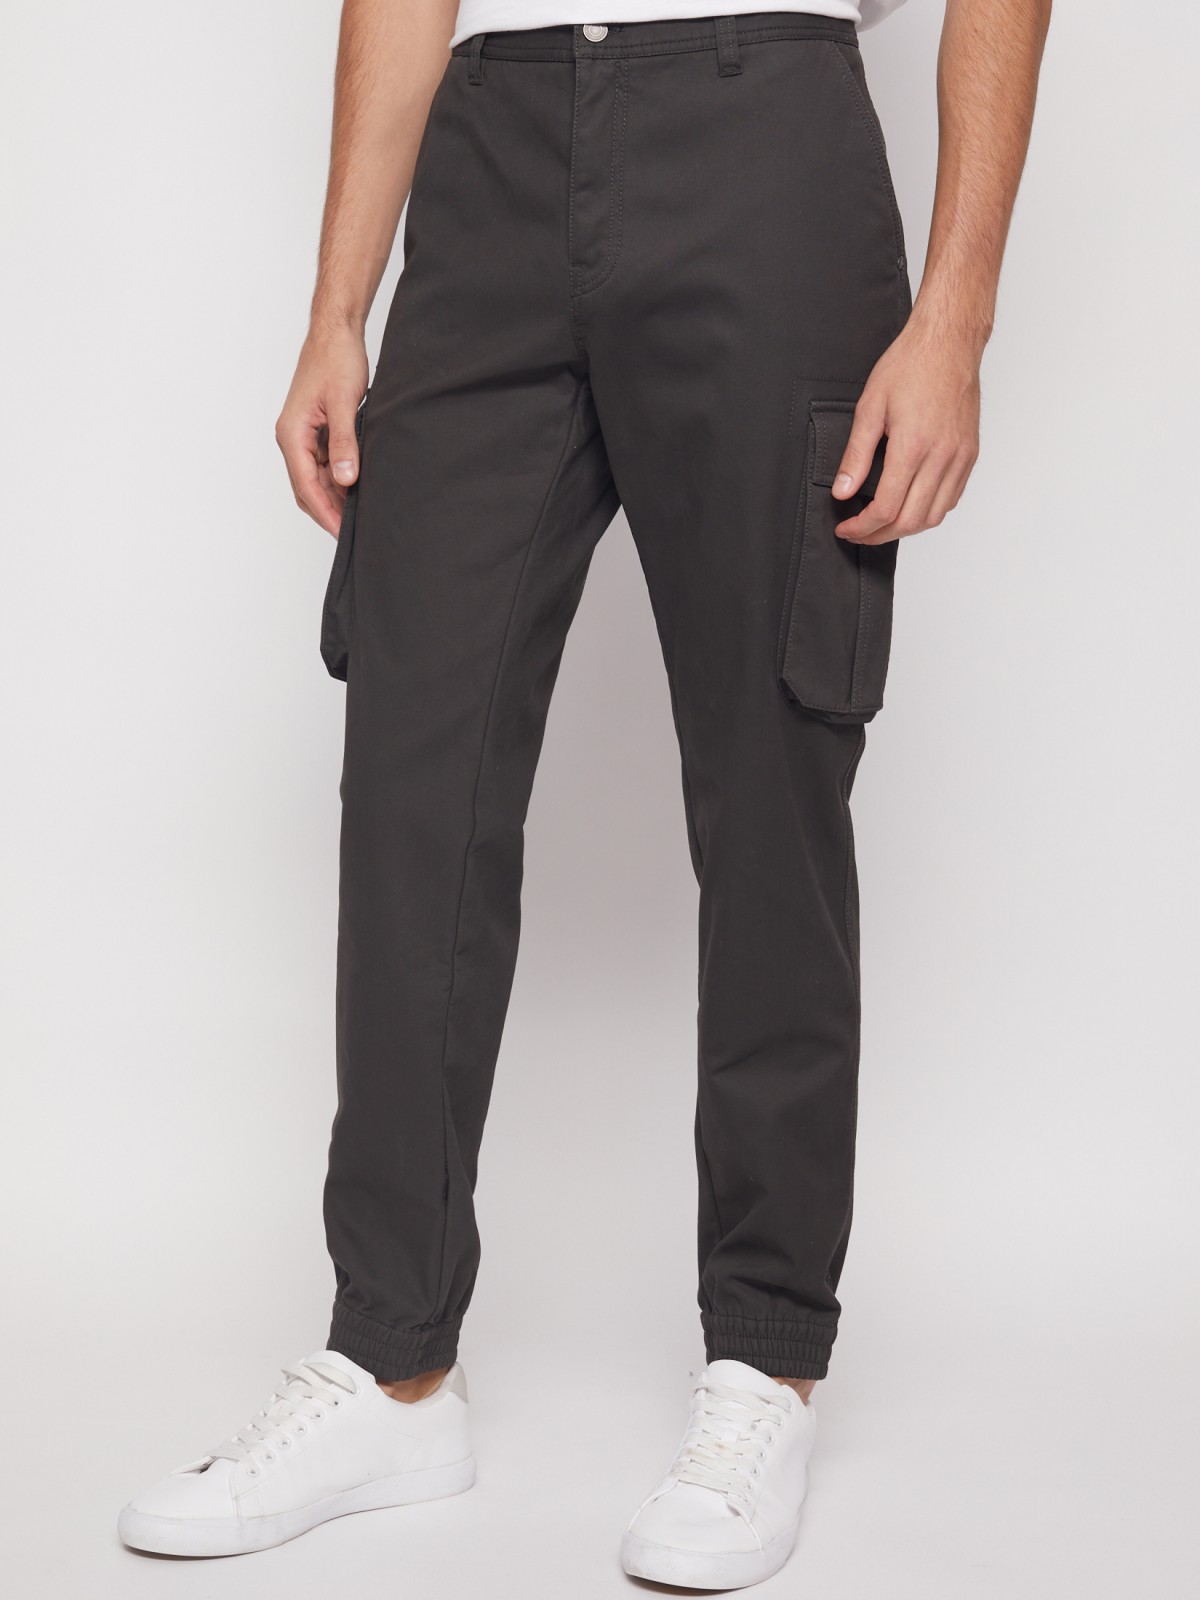 Хлопковые брюки-джоггеры с карманами карго zolla 21143730L021, цвет хаки, размер 28 - фото 2